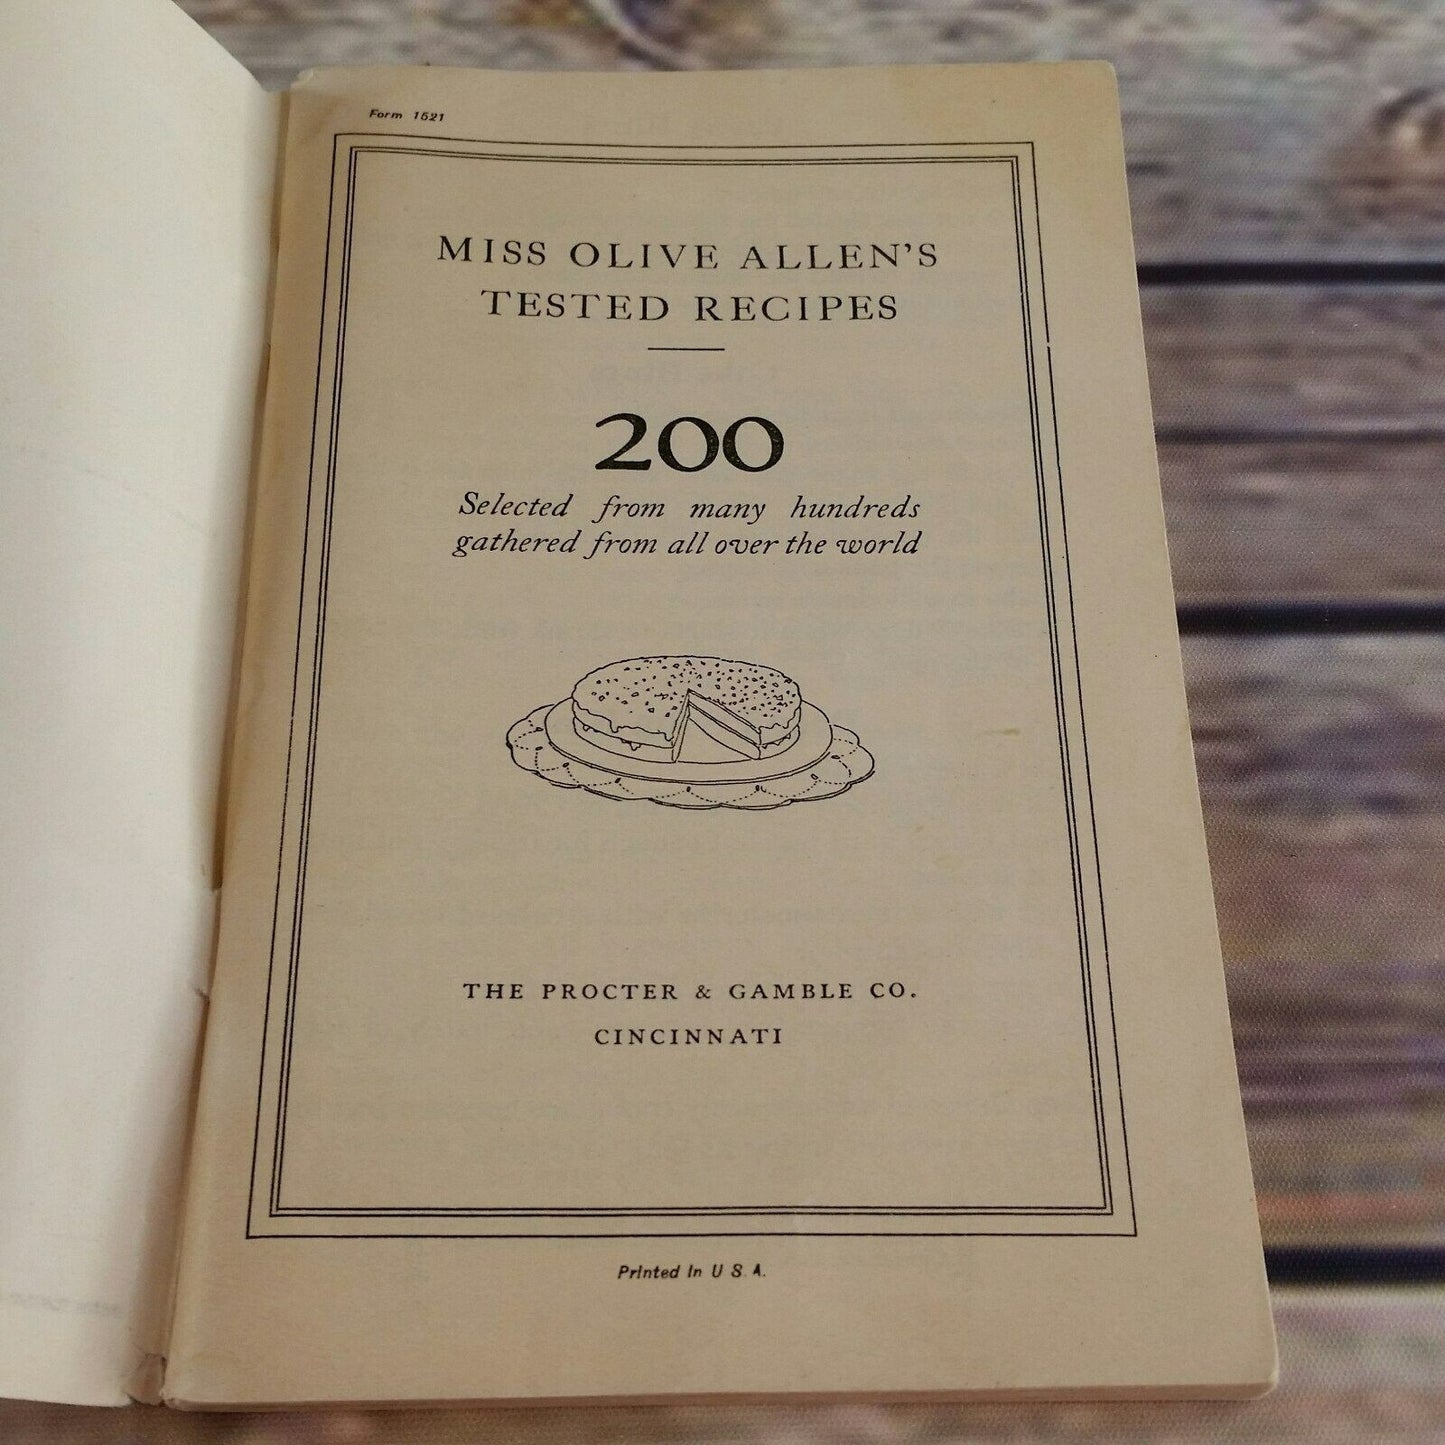 Vintage Cookbook Miss Olive Allens Tested Recipes Crisco Shortening Promo 1950s 1960s Paperback Booklet Proctor Gamble